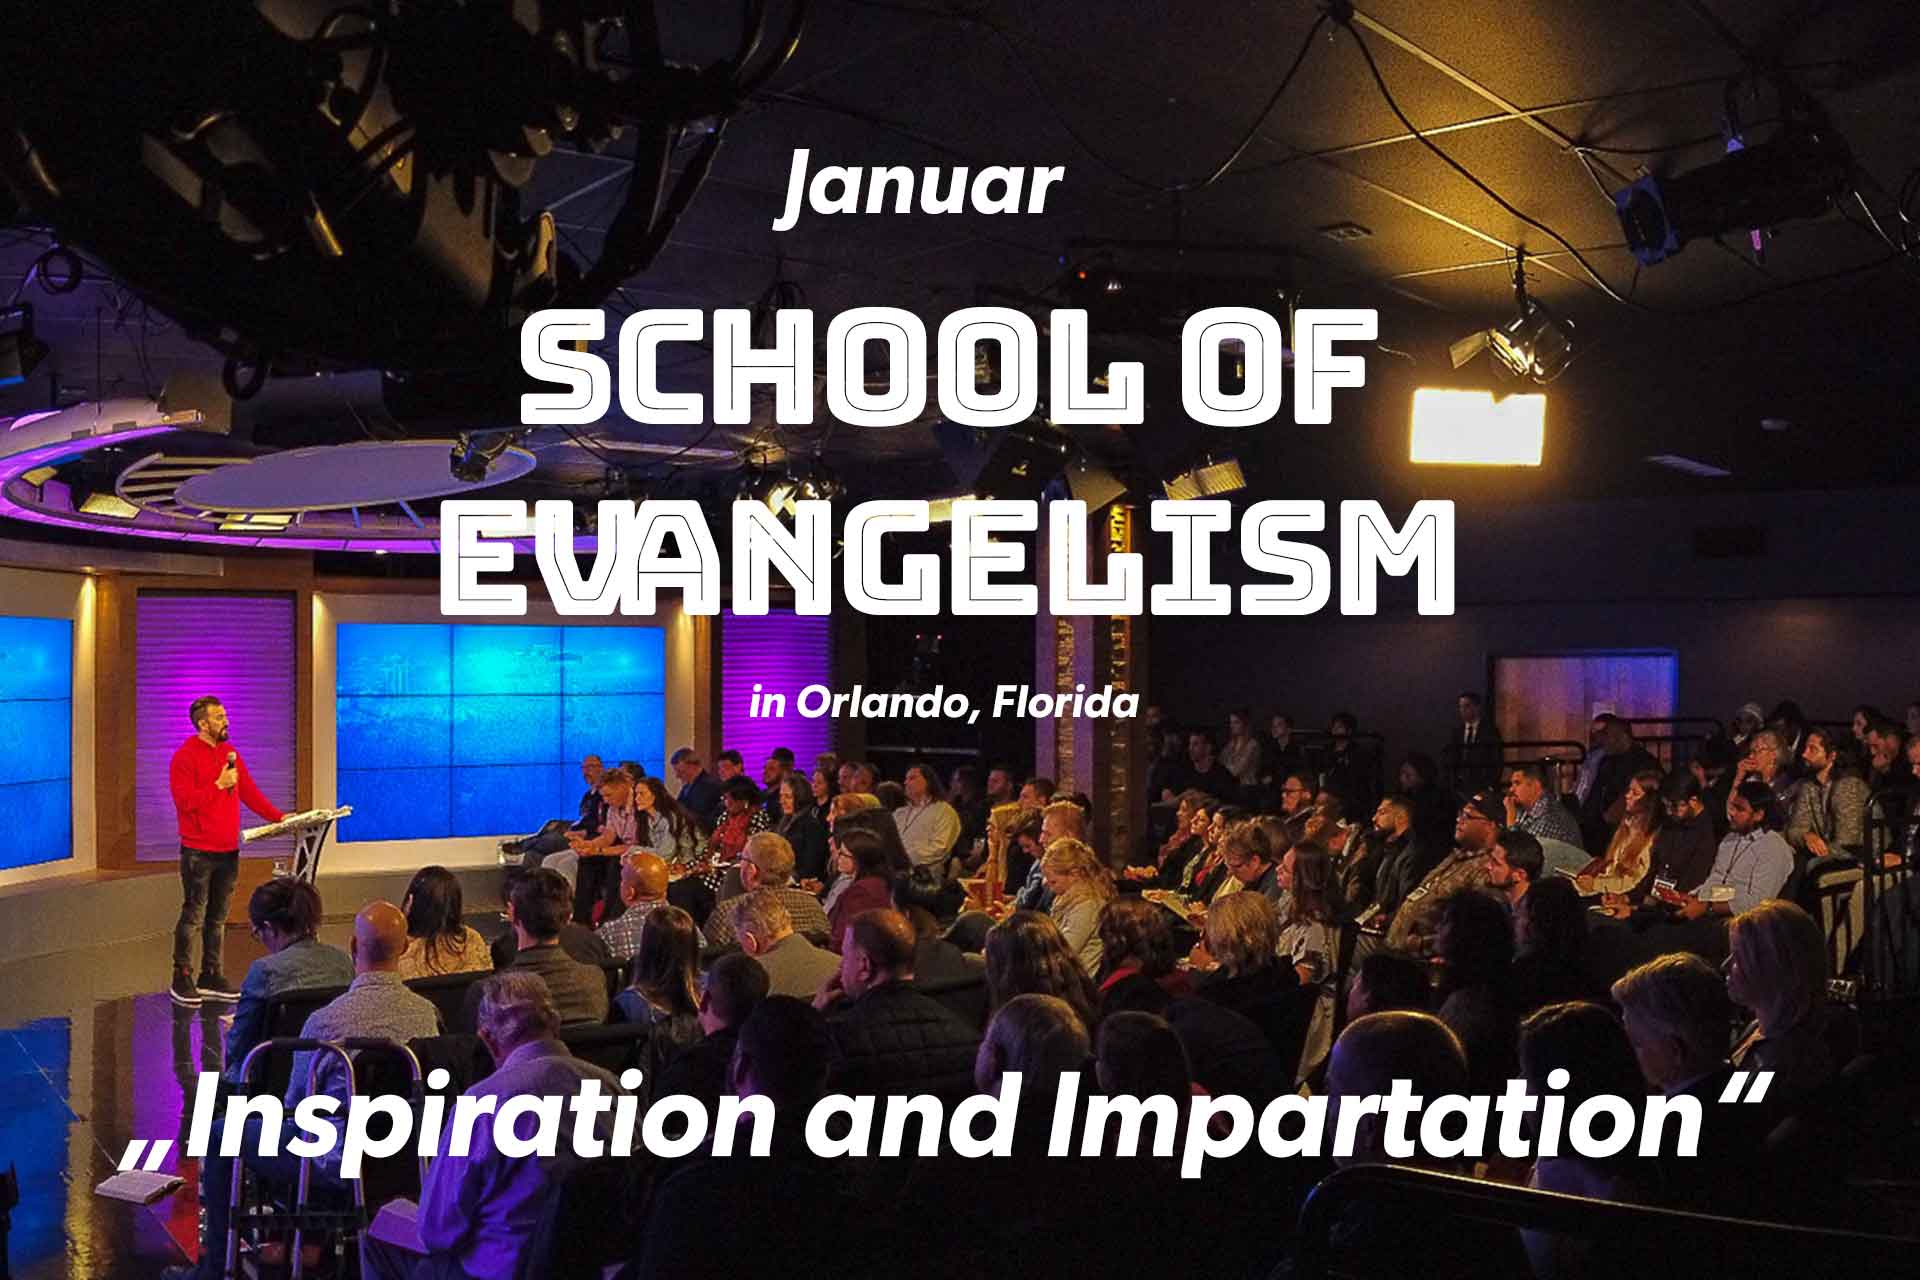 School of Evangelism